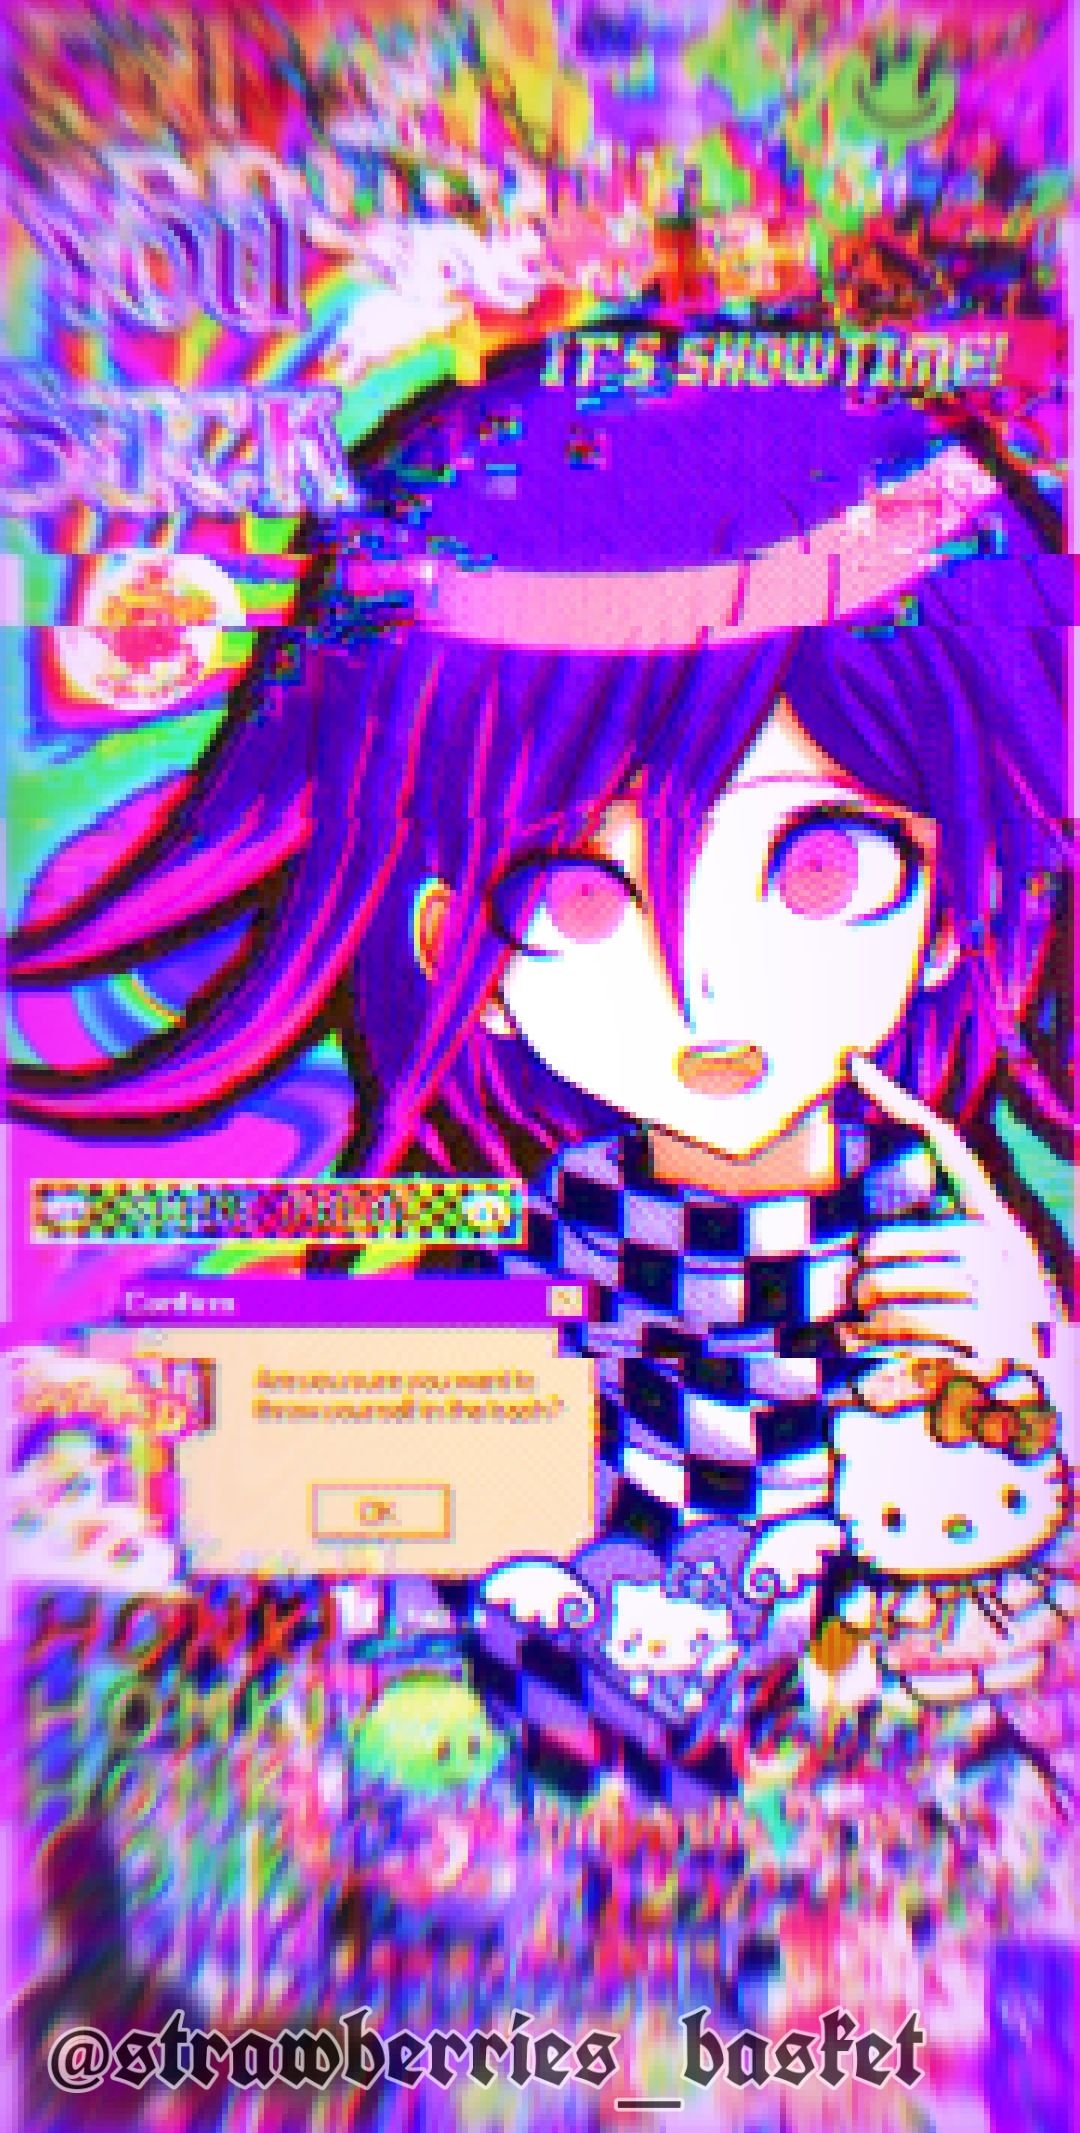 d a n g a n r o n p a. Anime wallpaper iphone, Kidcore wallpaper, Glitchcore wallpaper